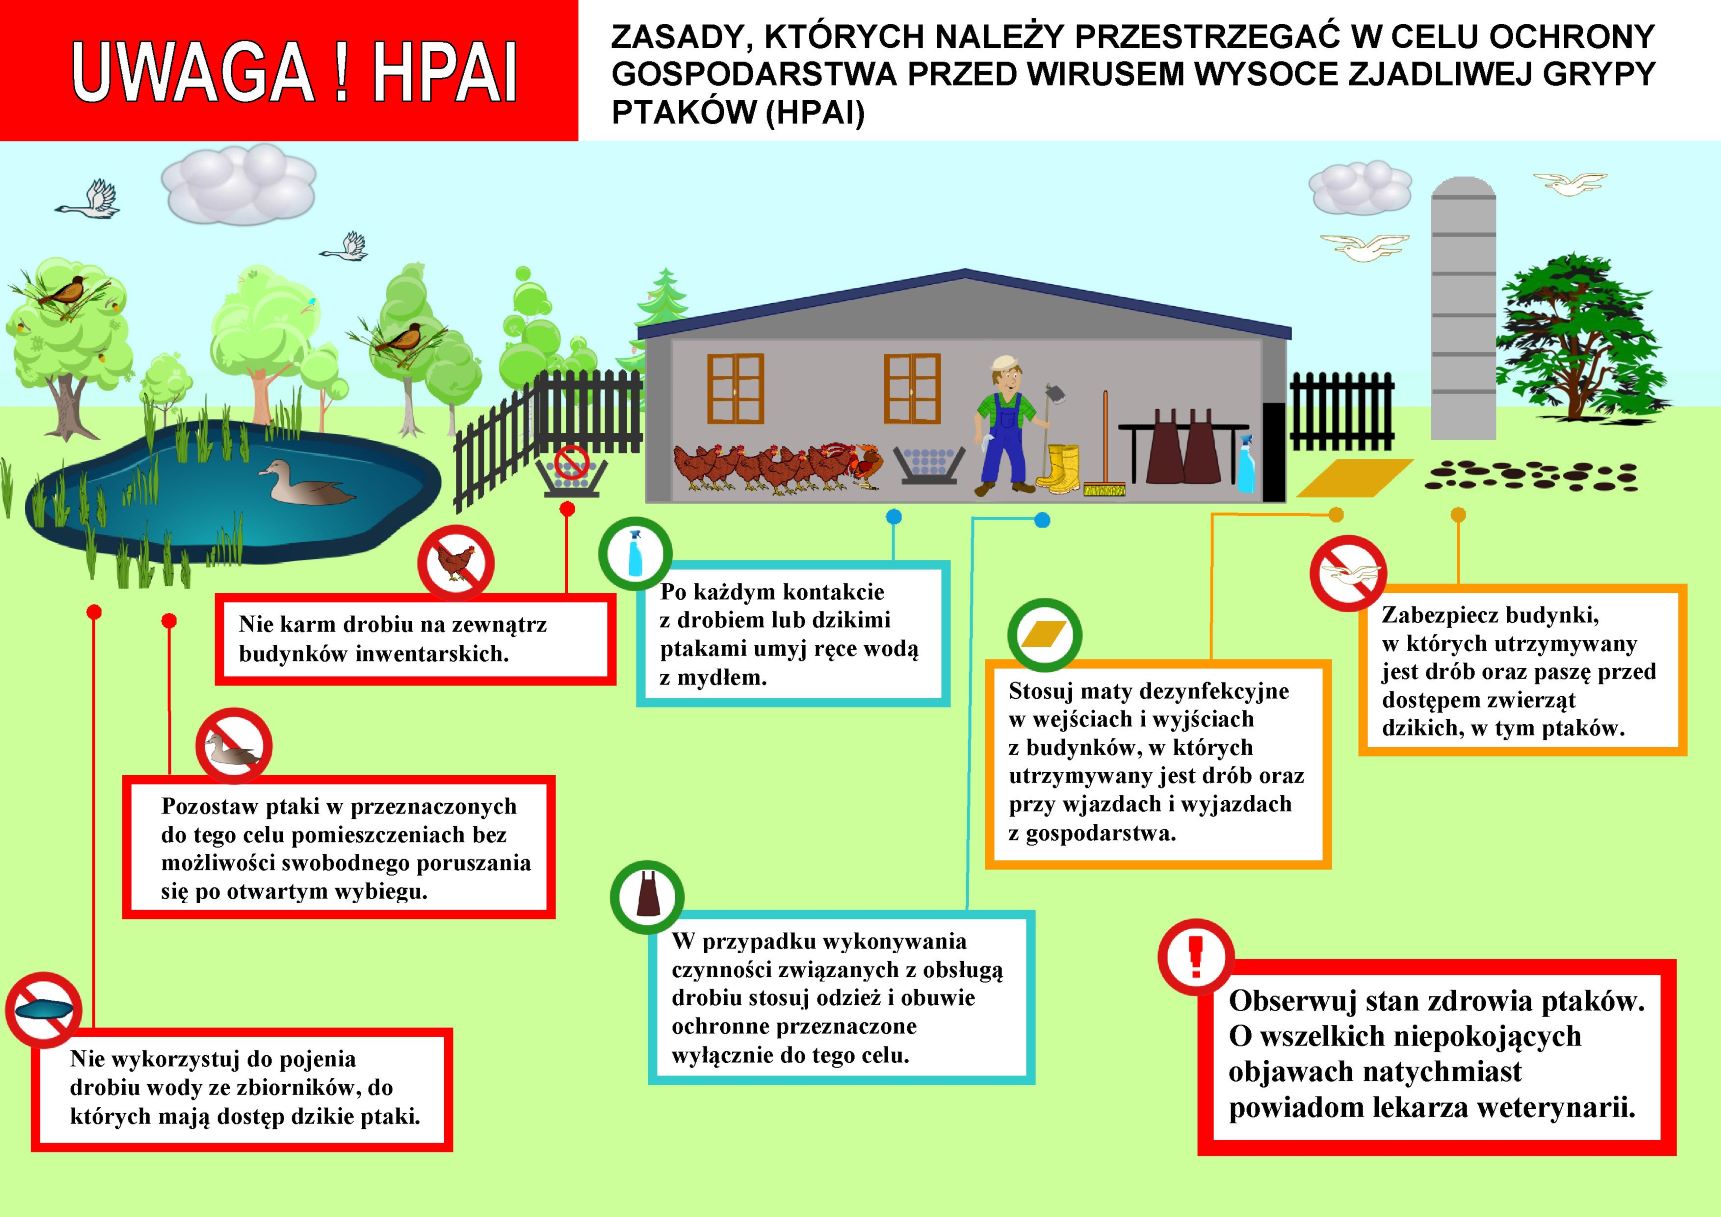 Zasady, których należy przestrzegać w celu ochrony gospodarstwa przed wirusem wysoce zjadliwej grypy ptaków (hpai)